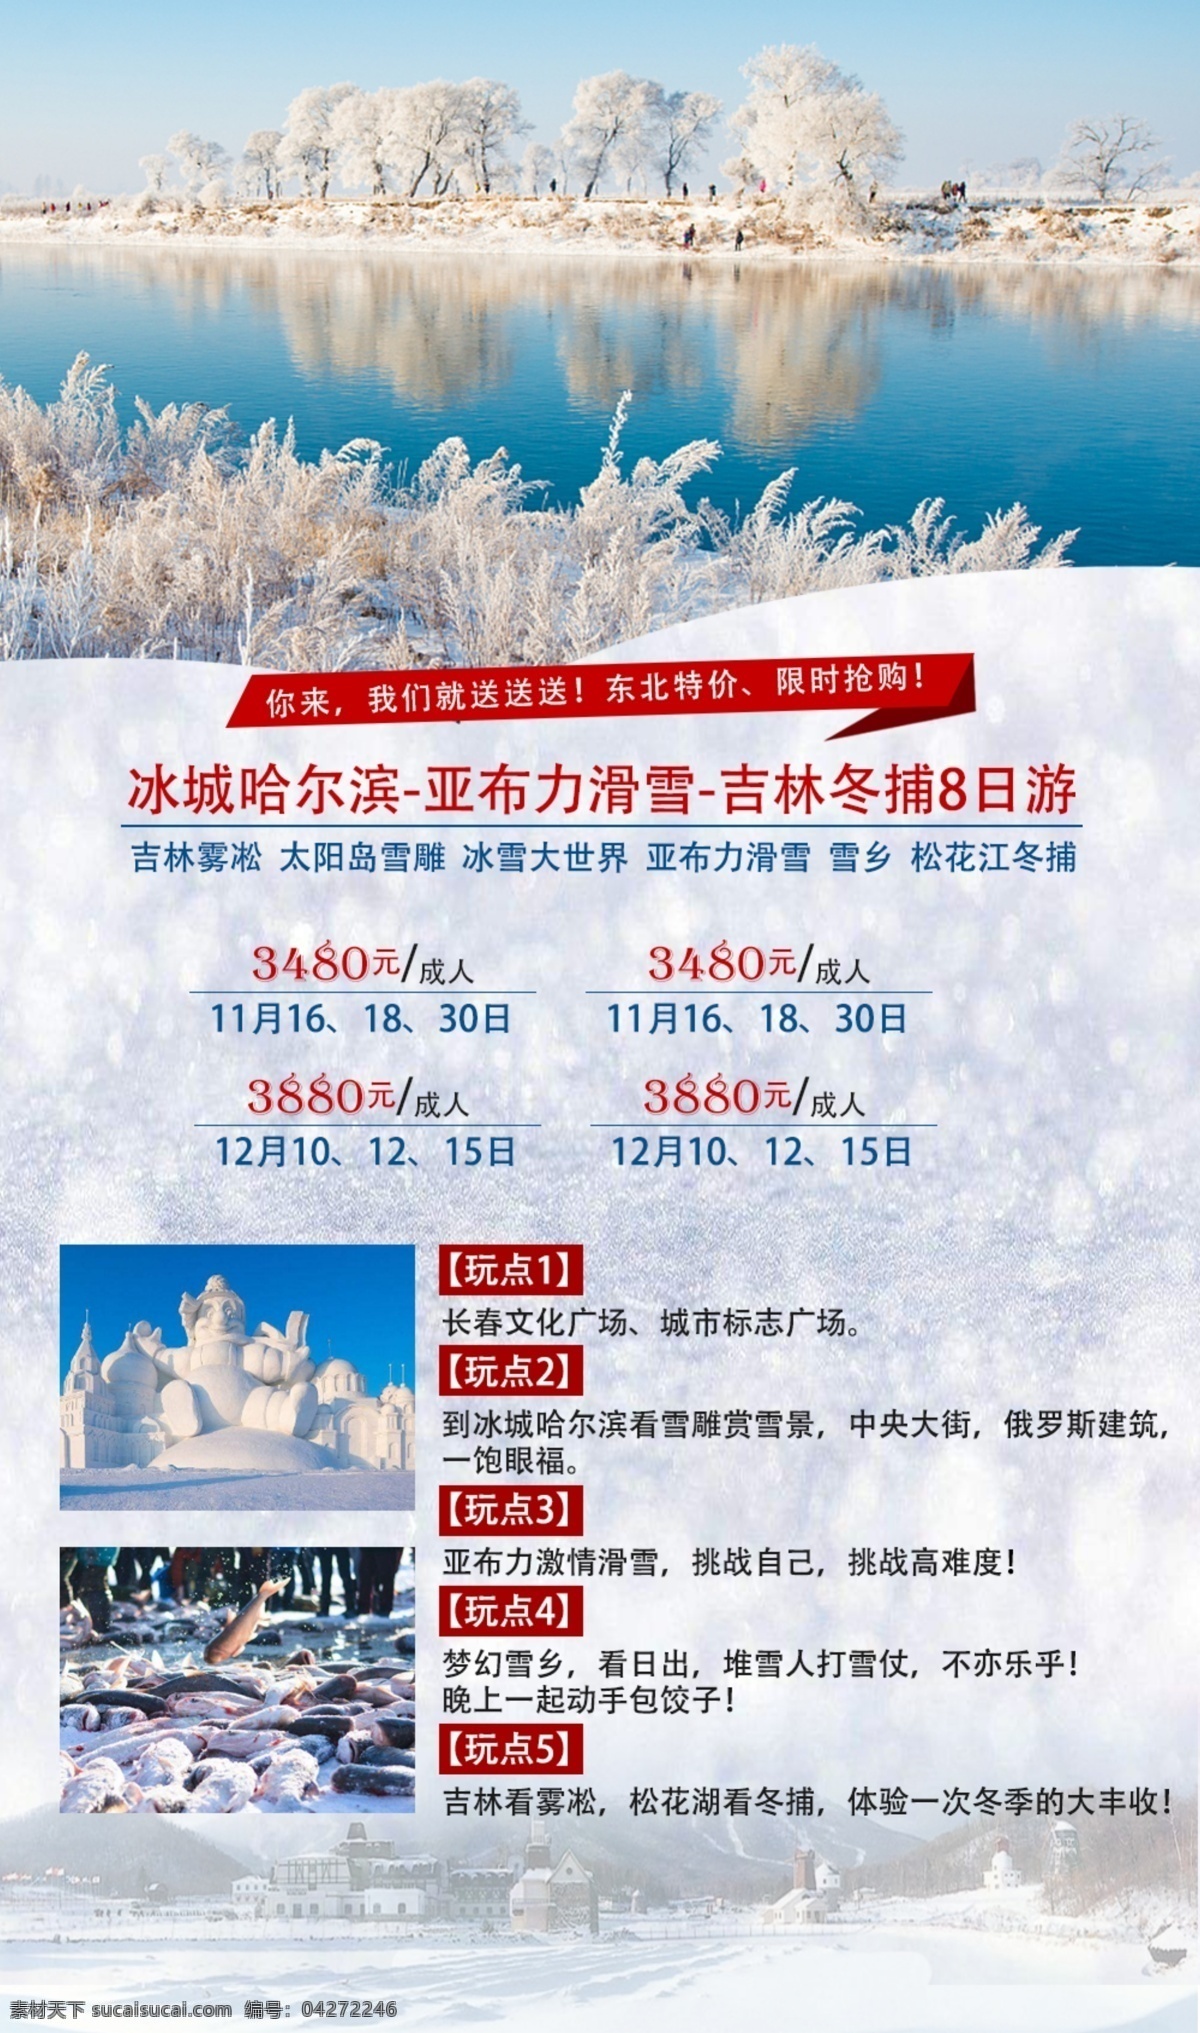 冬季 东北 旅游 海报 哈尔滨 吉林 太阳岛 冰雪 雾凇 滑雪 雪雕 雪乡